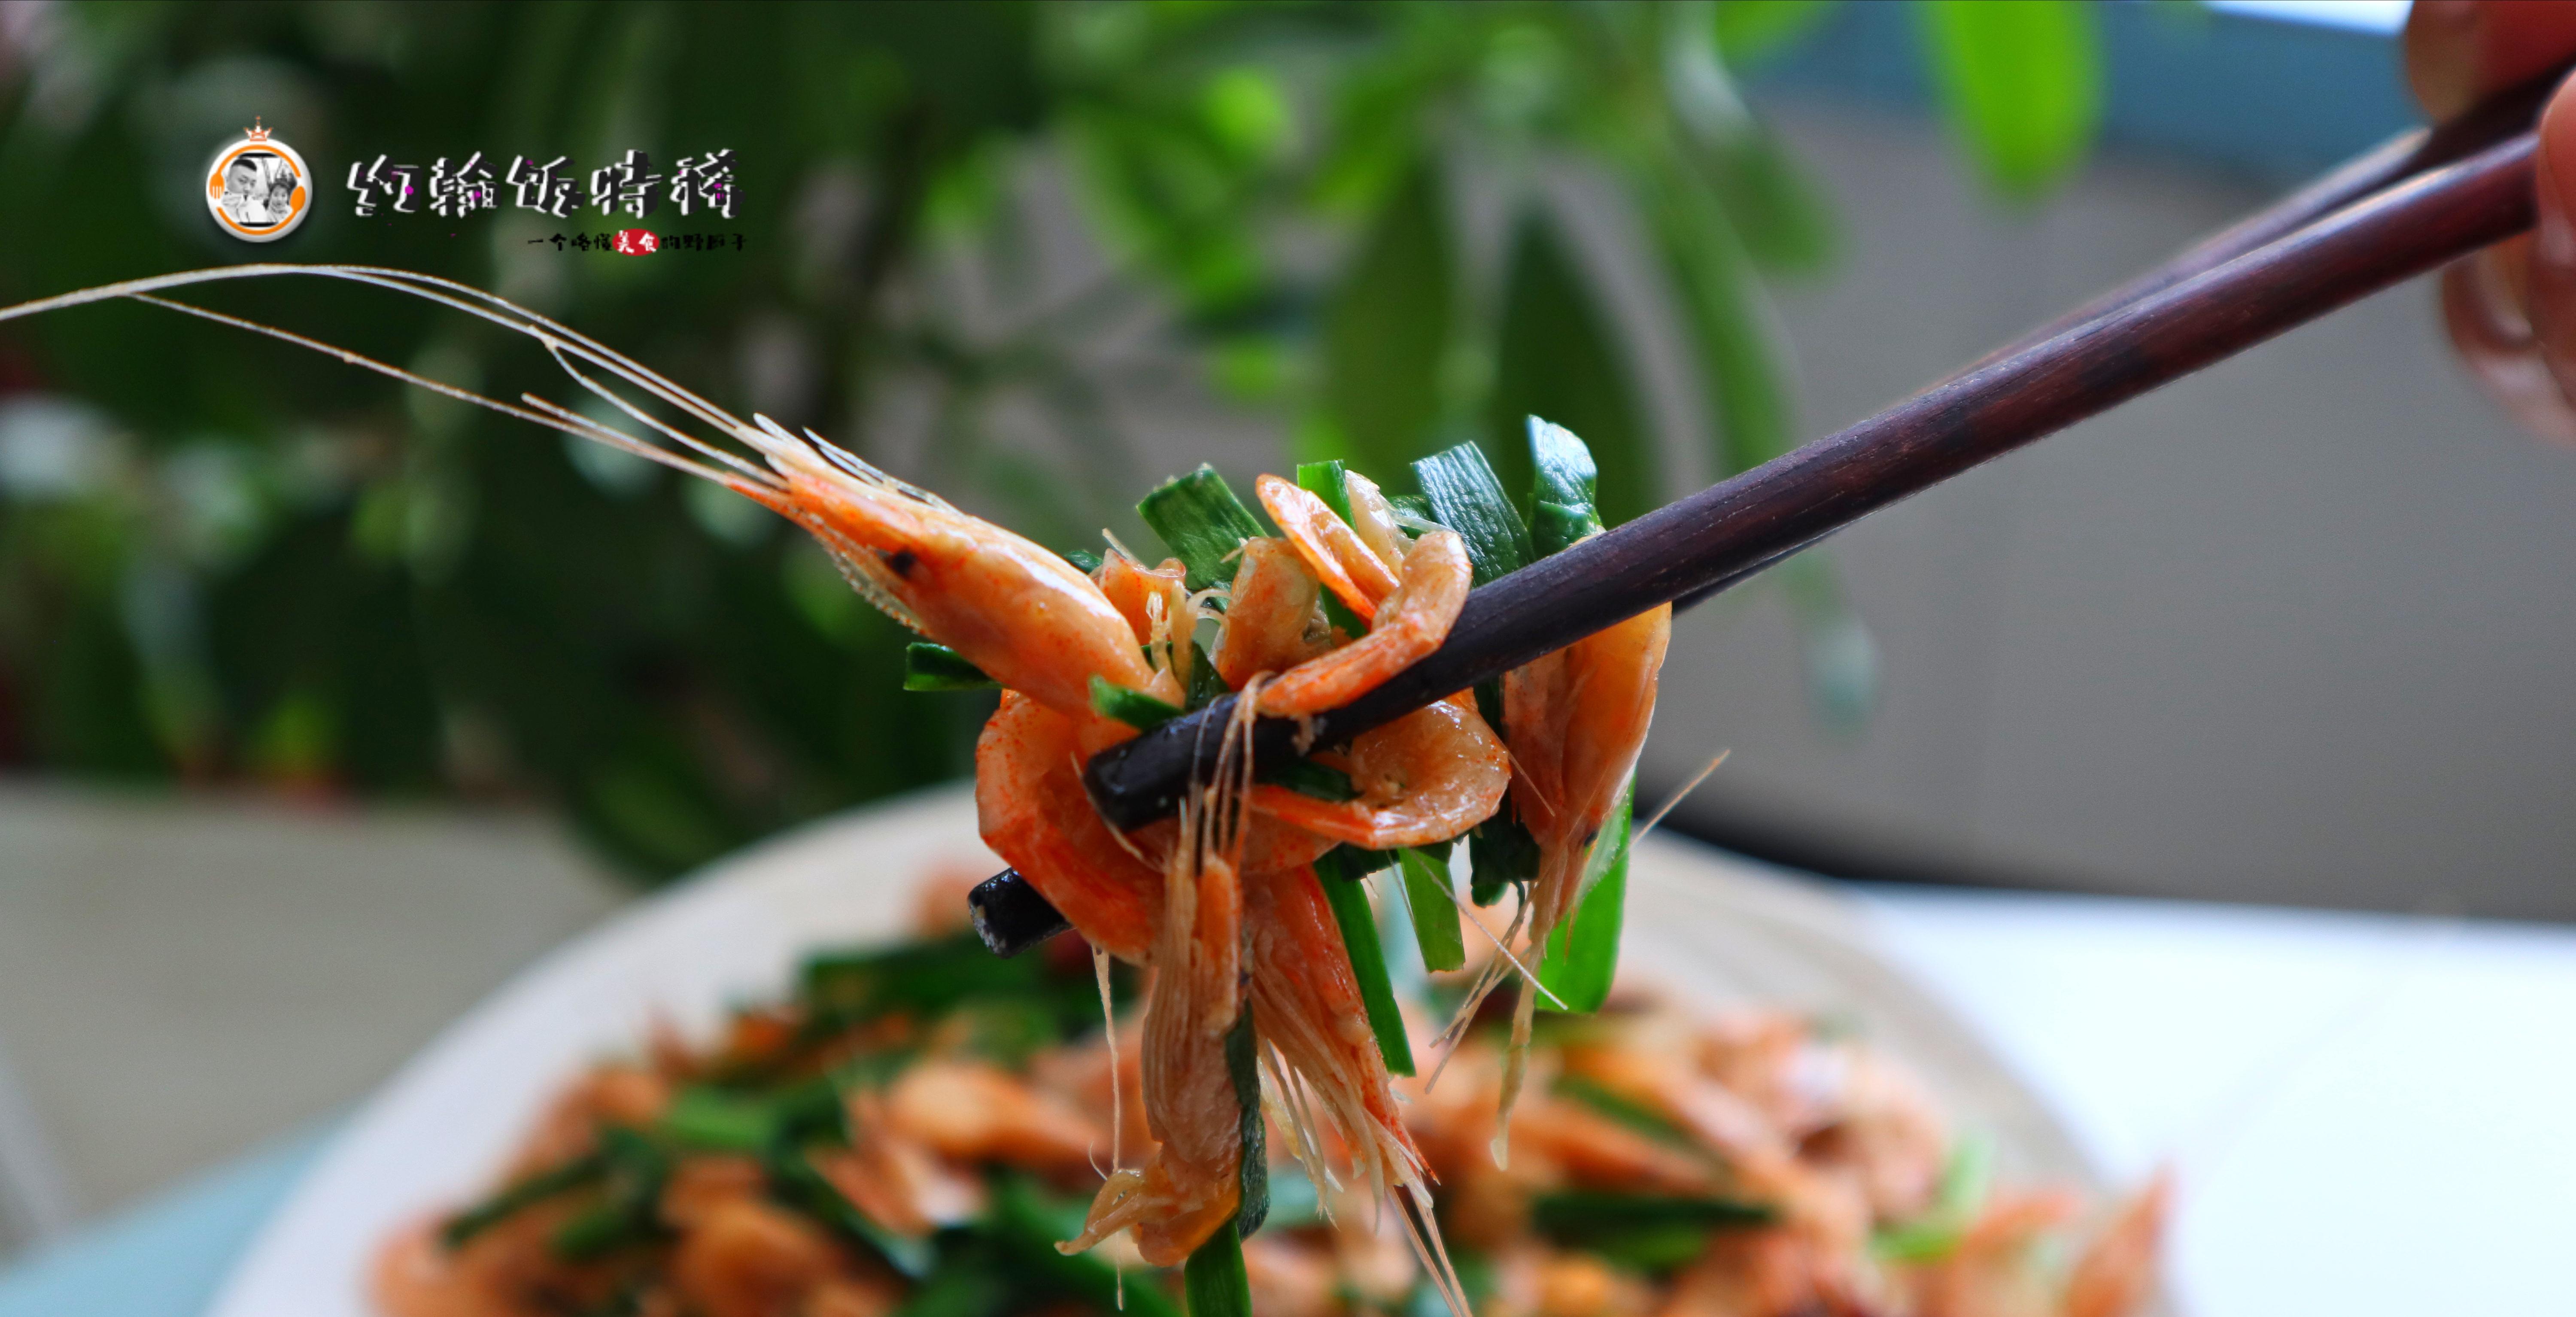 原创小白虾炒韭菜一道让人着迷的家常菜做法简单食材不贵